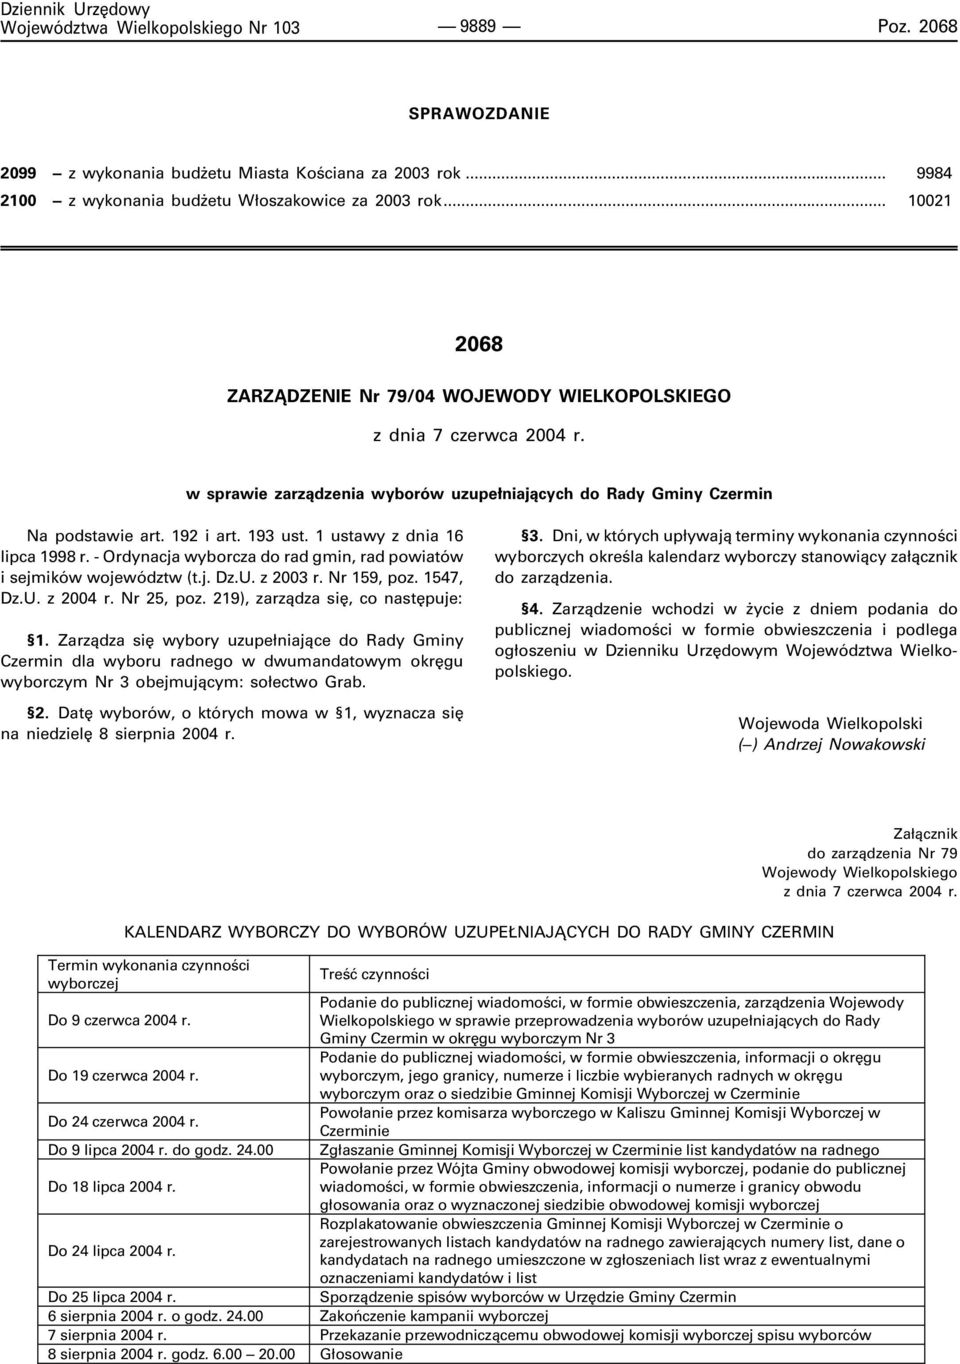 1 ustawy z dnia 16 lipca 1998 r. - Ordynacja wyborcza do rad gmin, rad powiatów i sejmików województw (t.j. Dz.U. z 2003 r. Nr 159, poz. 1547, Dz.U. z 2004 r. Nr 25, poz.